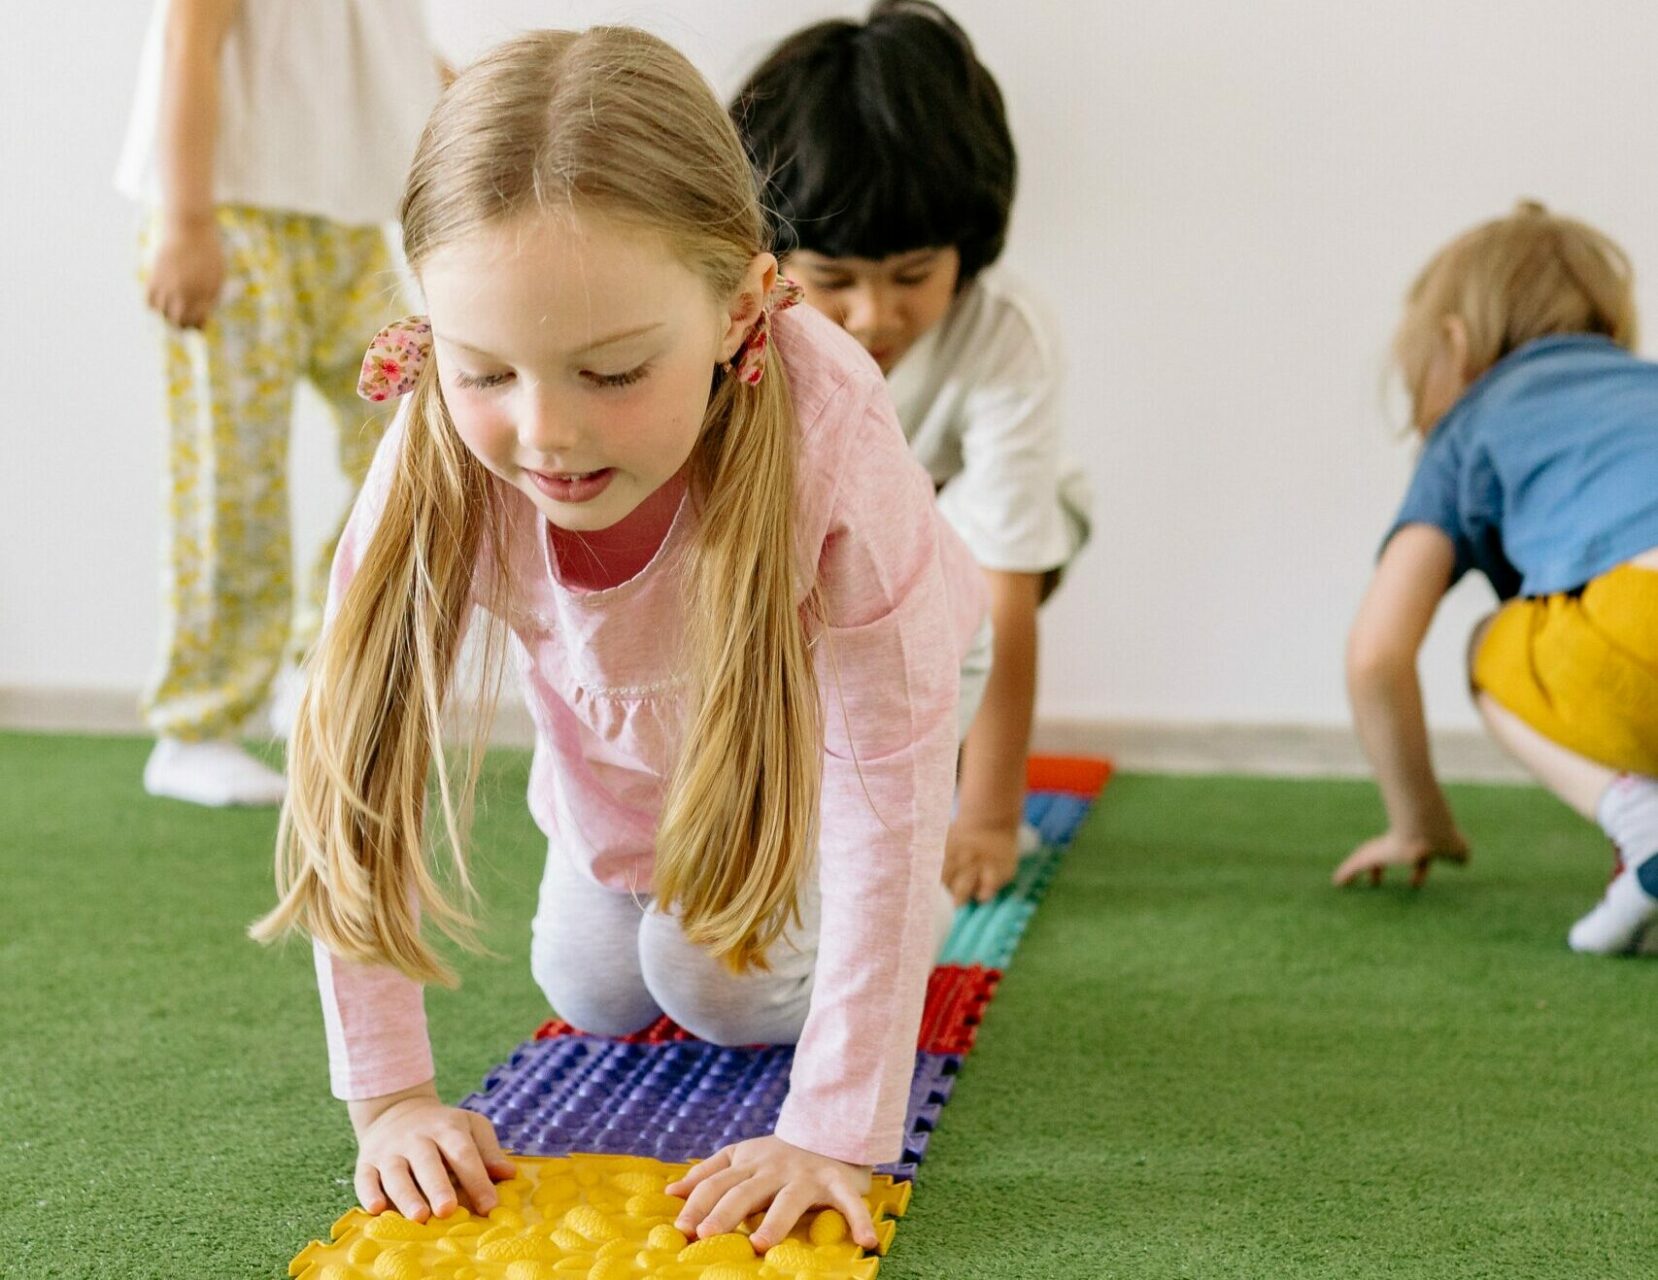 thérapie intensive - séance de psychomotricité pour les enfants atteints de troubles du développement ou de paralysie cérébrale. les enfants se déplacent à quatre pattes sur les tapis sensoriels.